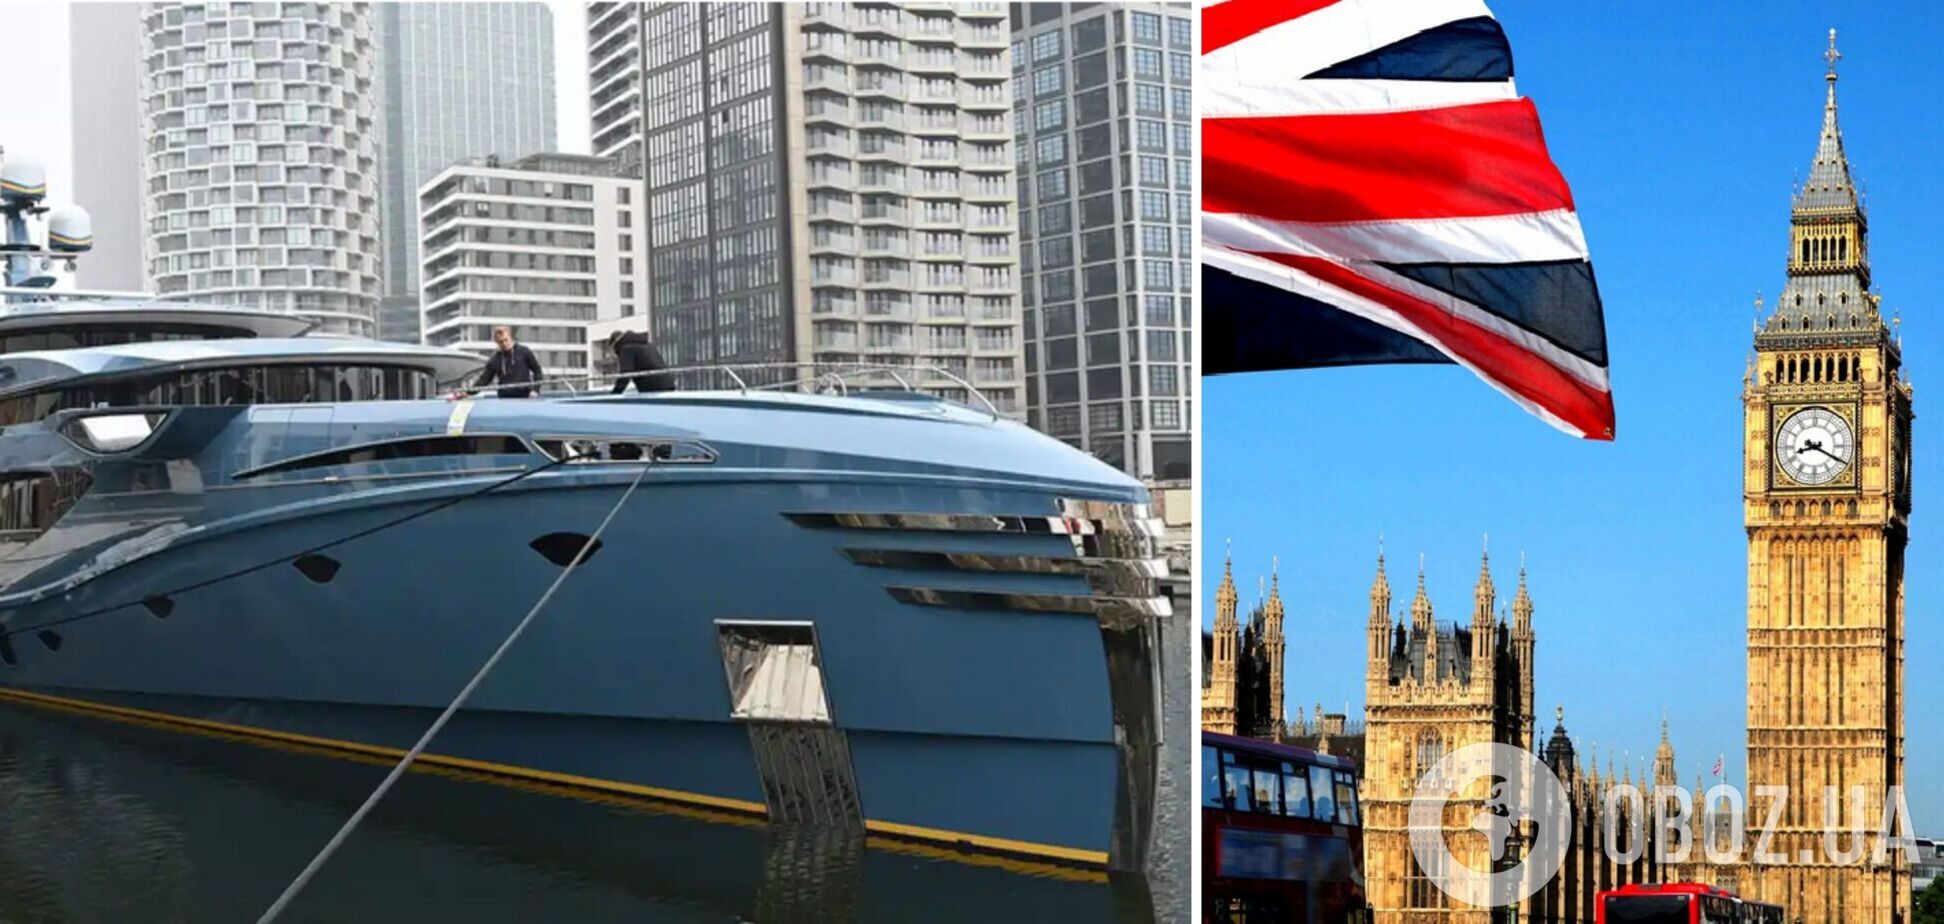 Поменял Путина на яхту: российский олигарх судится с Великобританией за арестованное судно